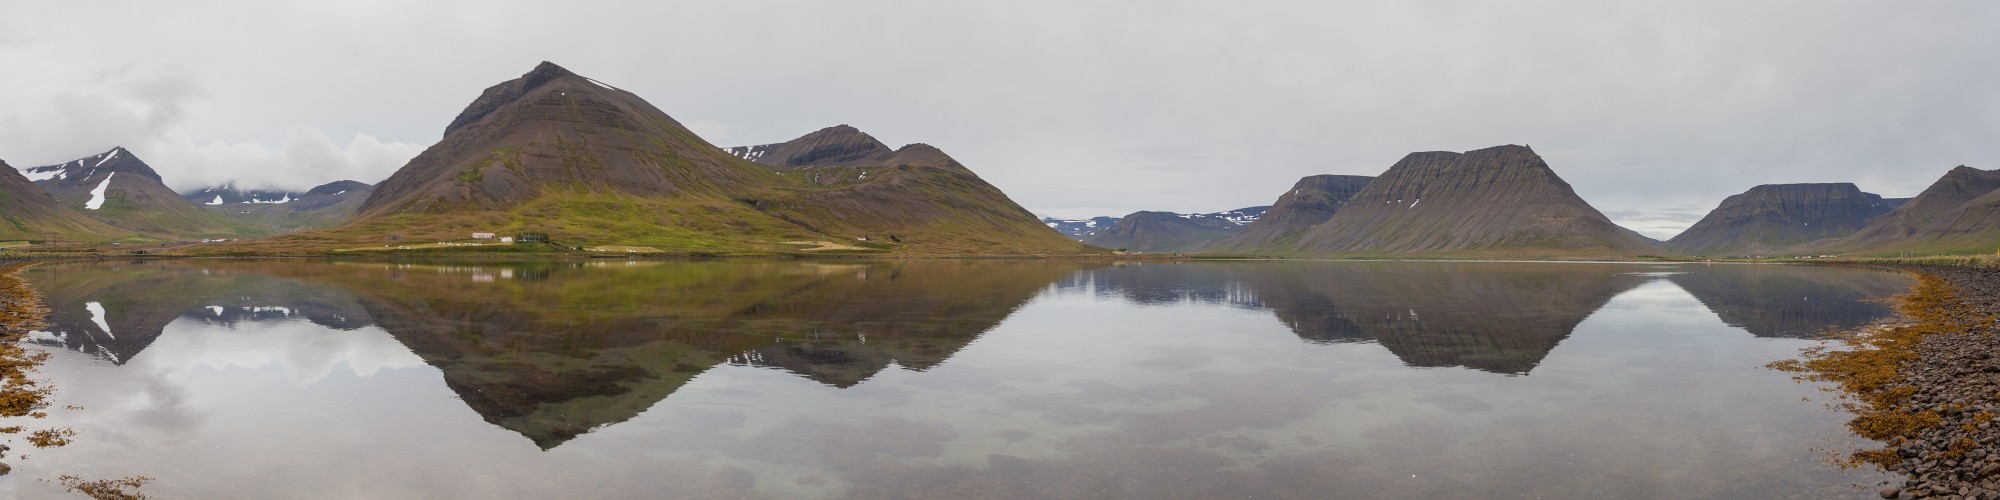 Dýrafjörður, Vestfirðir, Islandia, 2014-08-15, DD 004 PAN